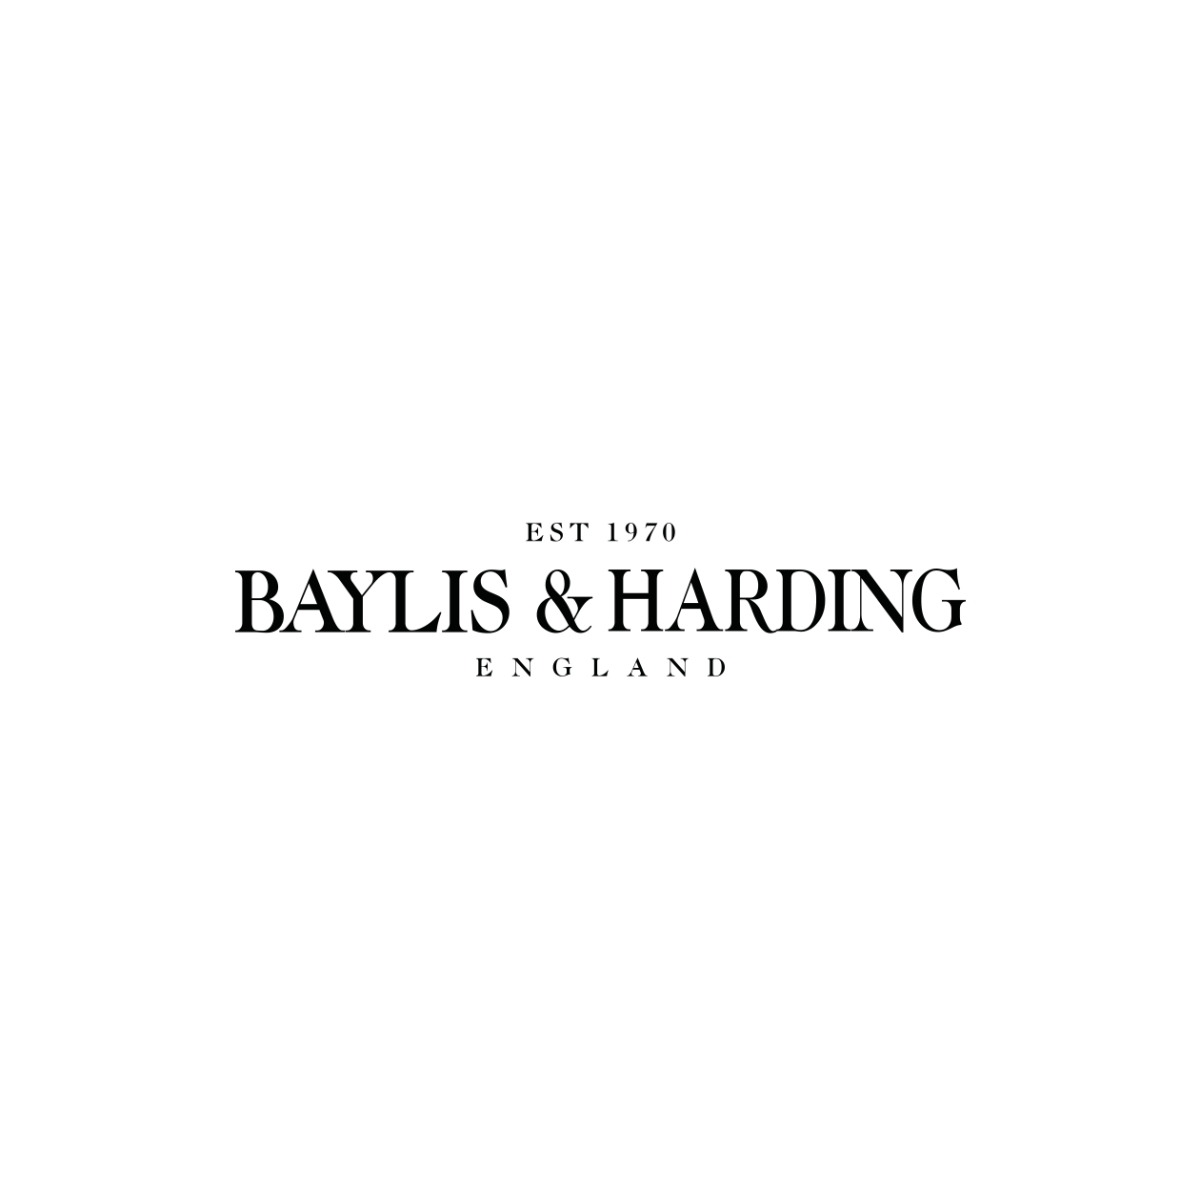 Baylis & harding